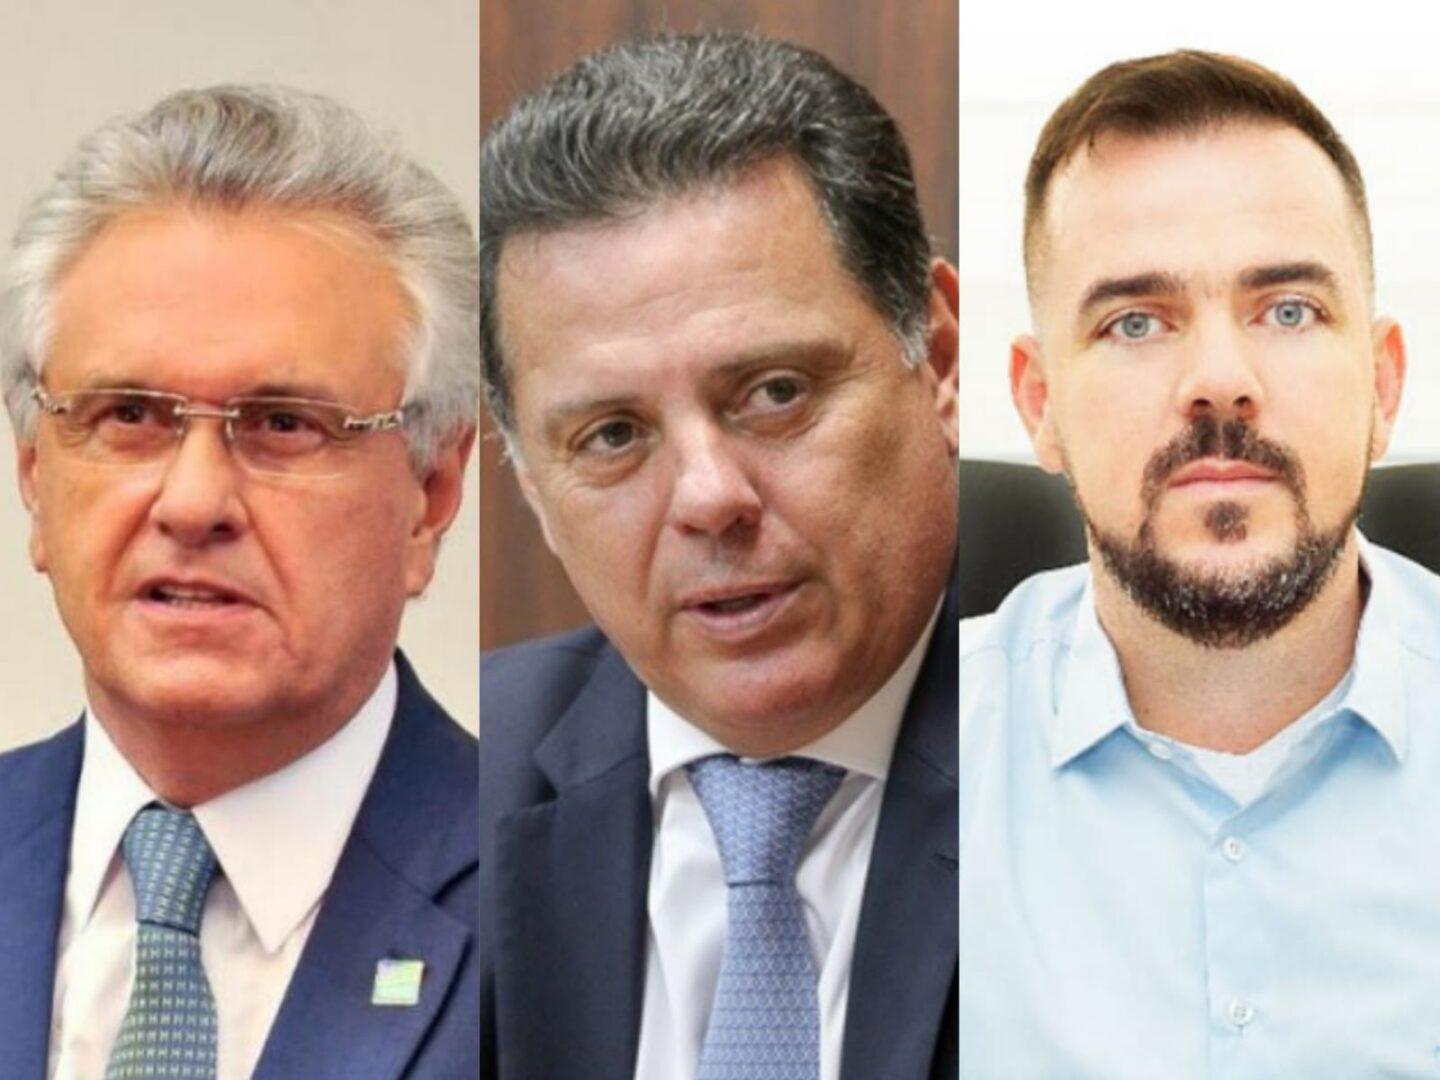 Eleições 2022: Caiado tem 37,1% das intenções de voto, Marconi 14,1% e Mendanha 13%